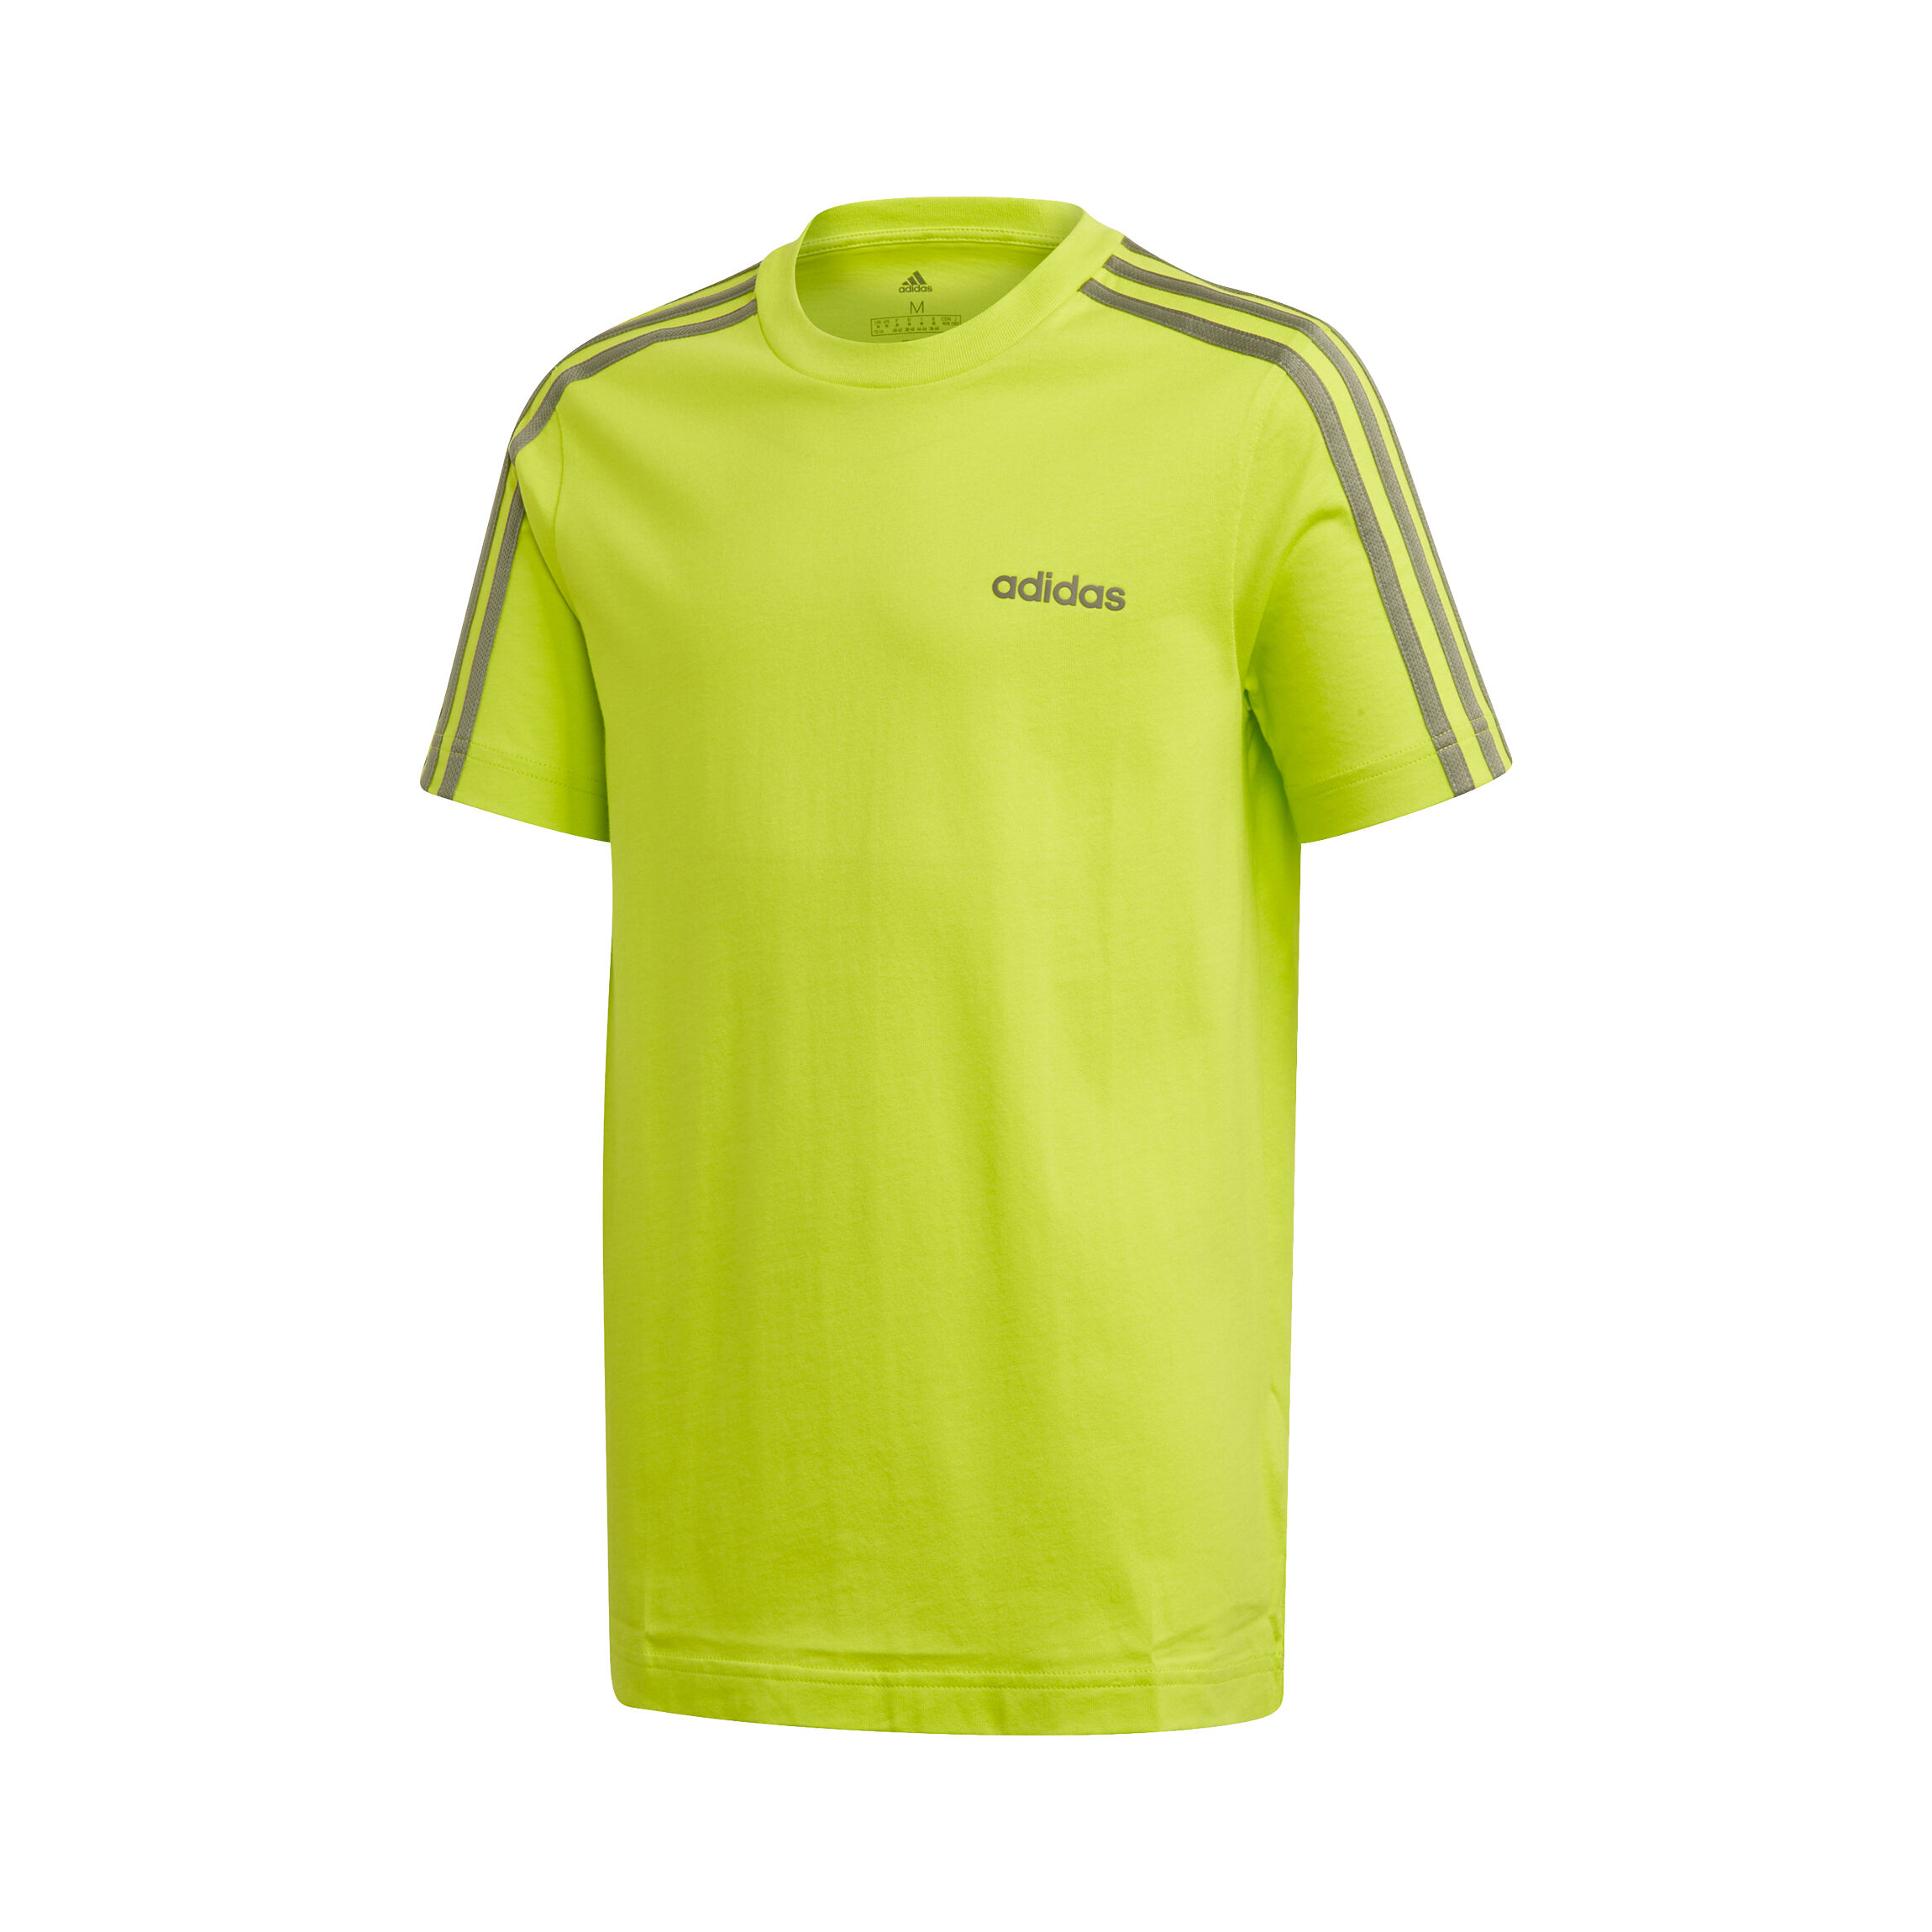 neon yellow adidas shirt